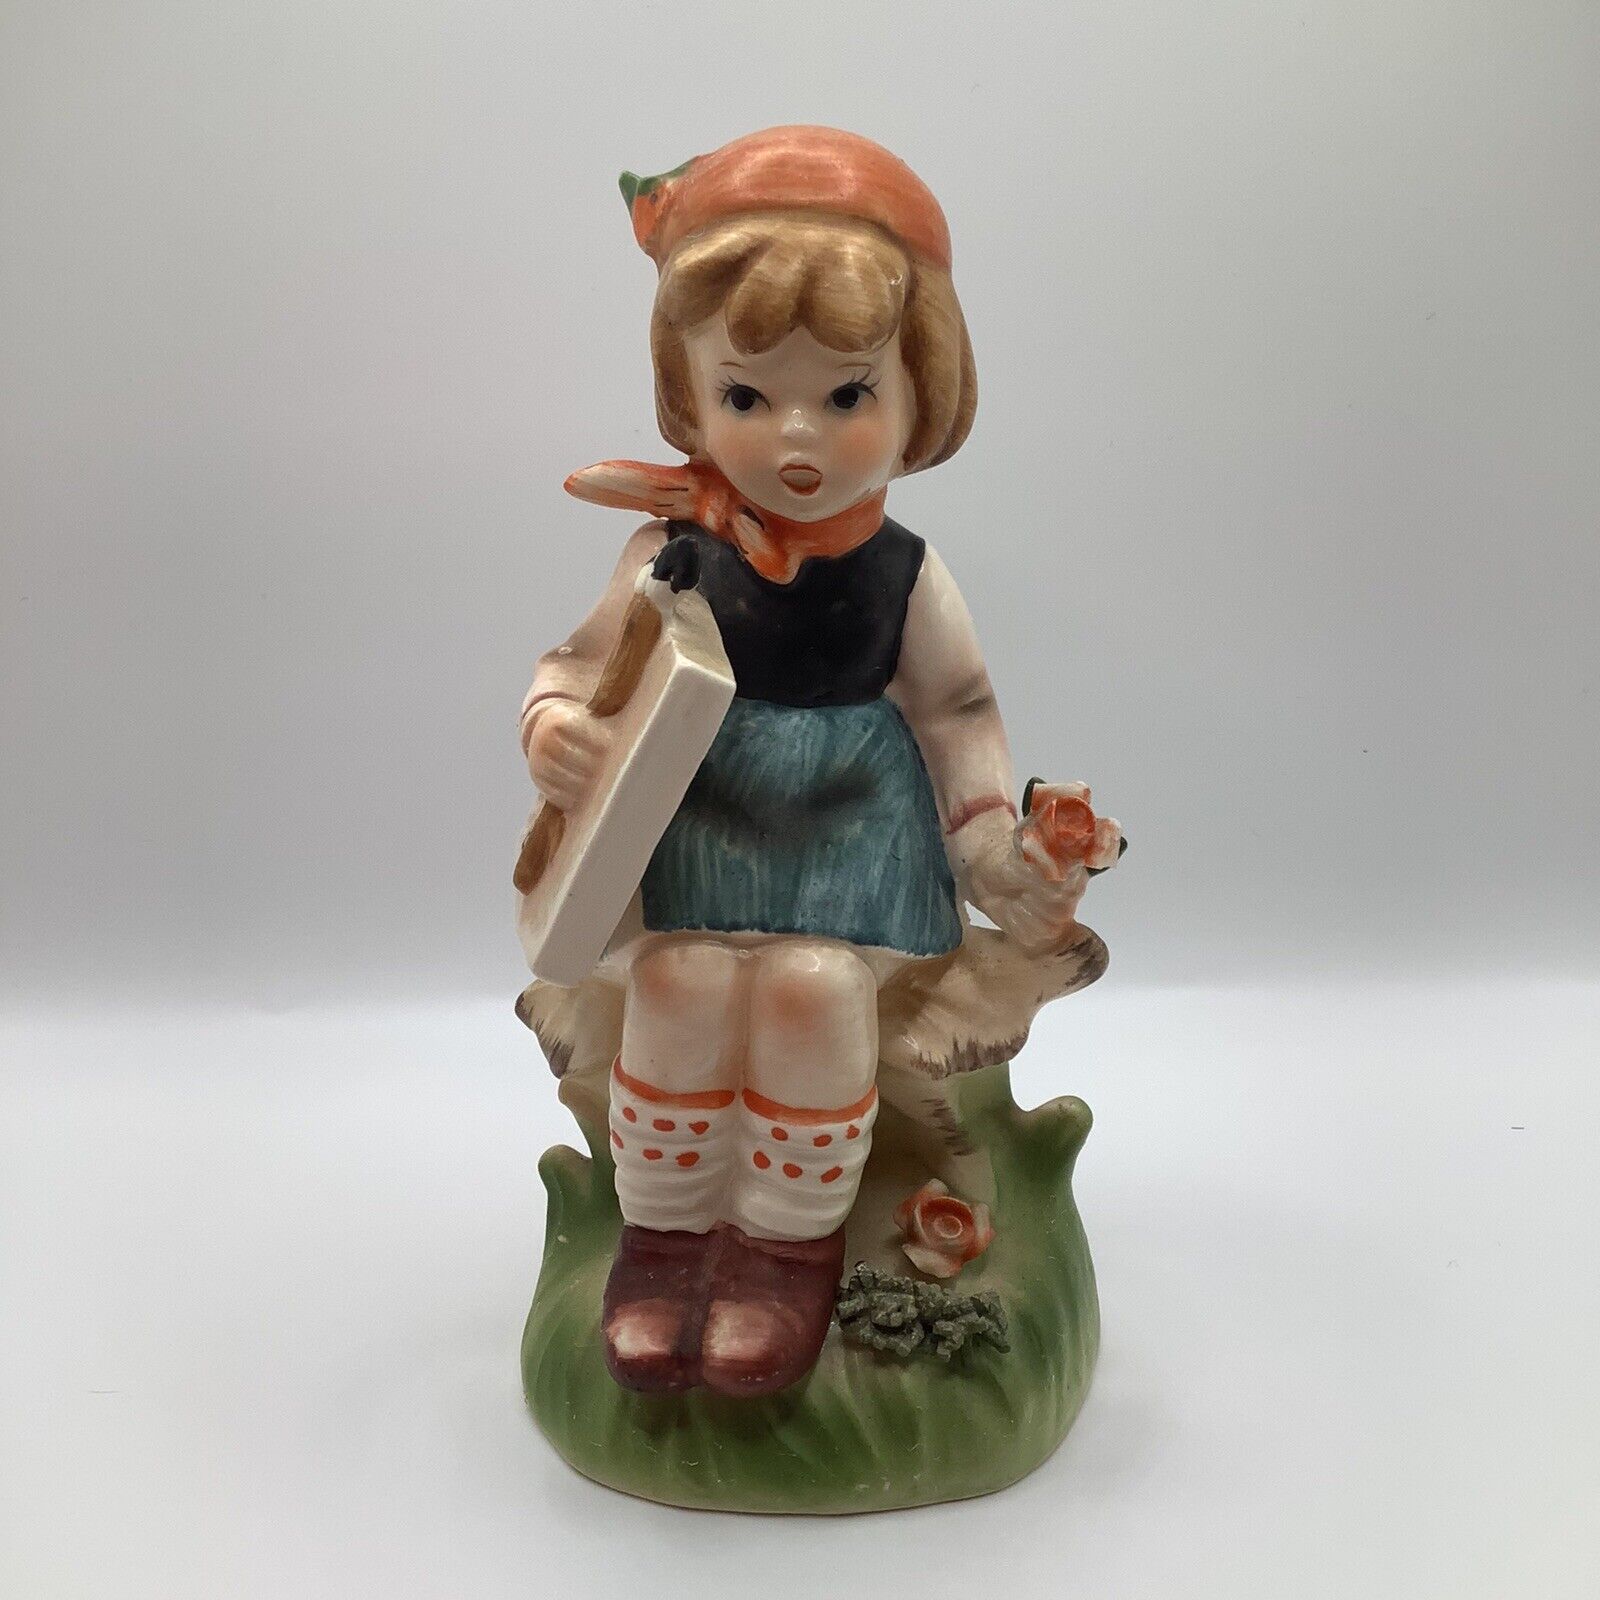 Vintage Royal Crown Little Artist Handcrafted Porcelain Figurine 6” H